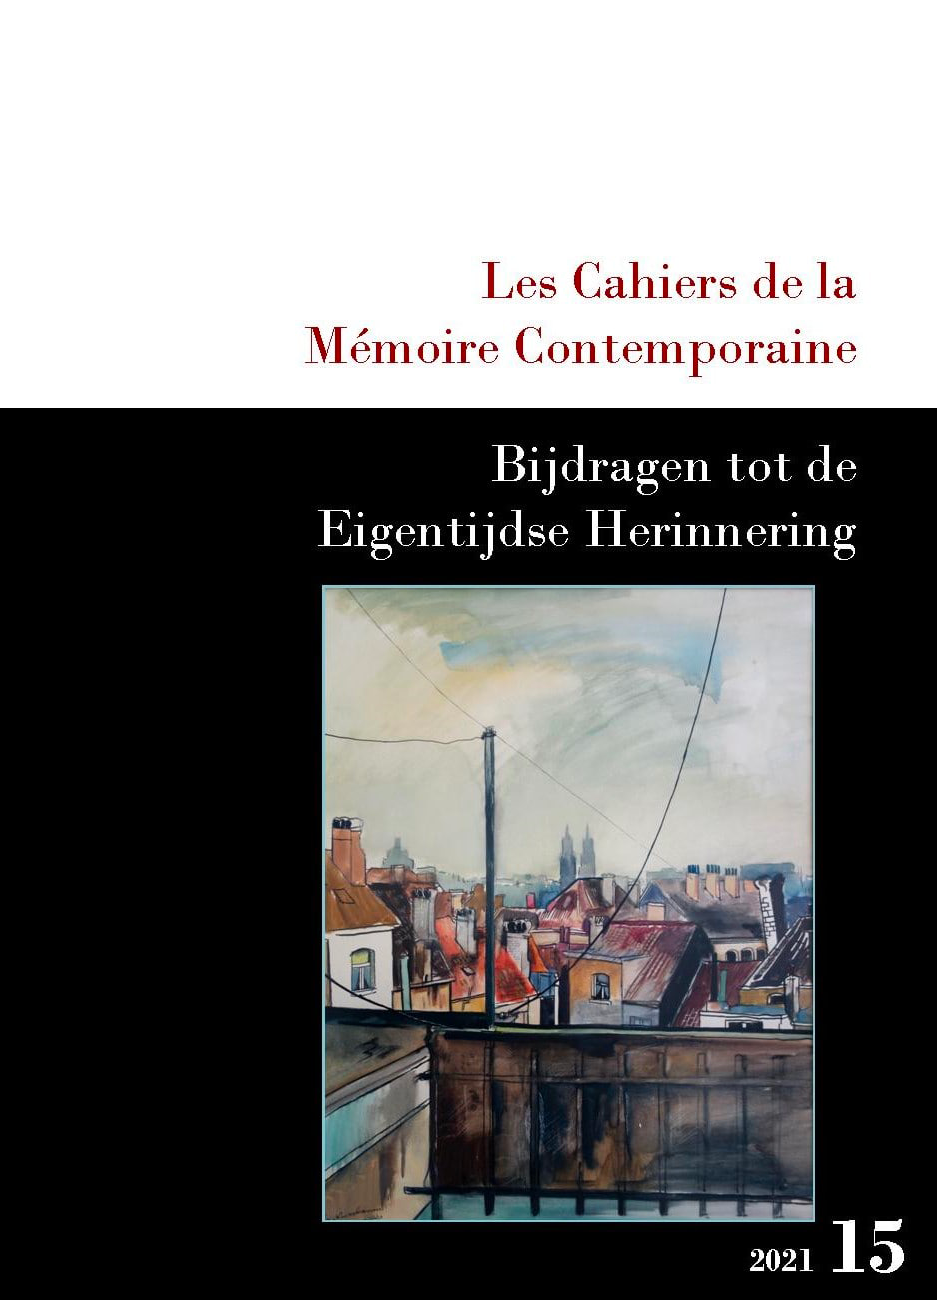 Les Cahiers de la Mémoire Contemporaine 15-2021